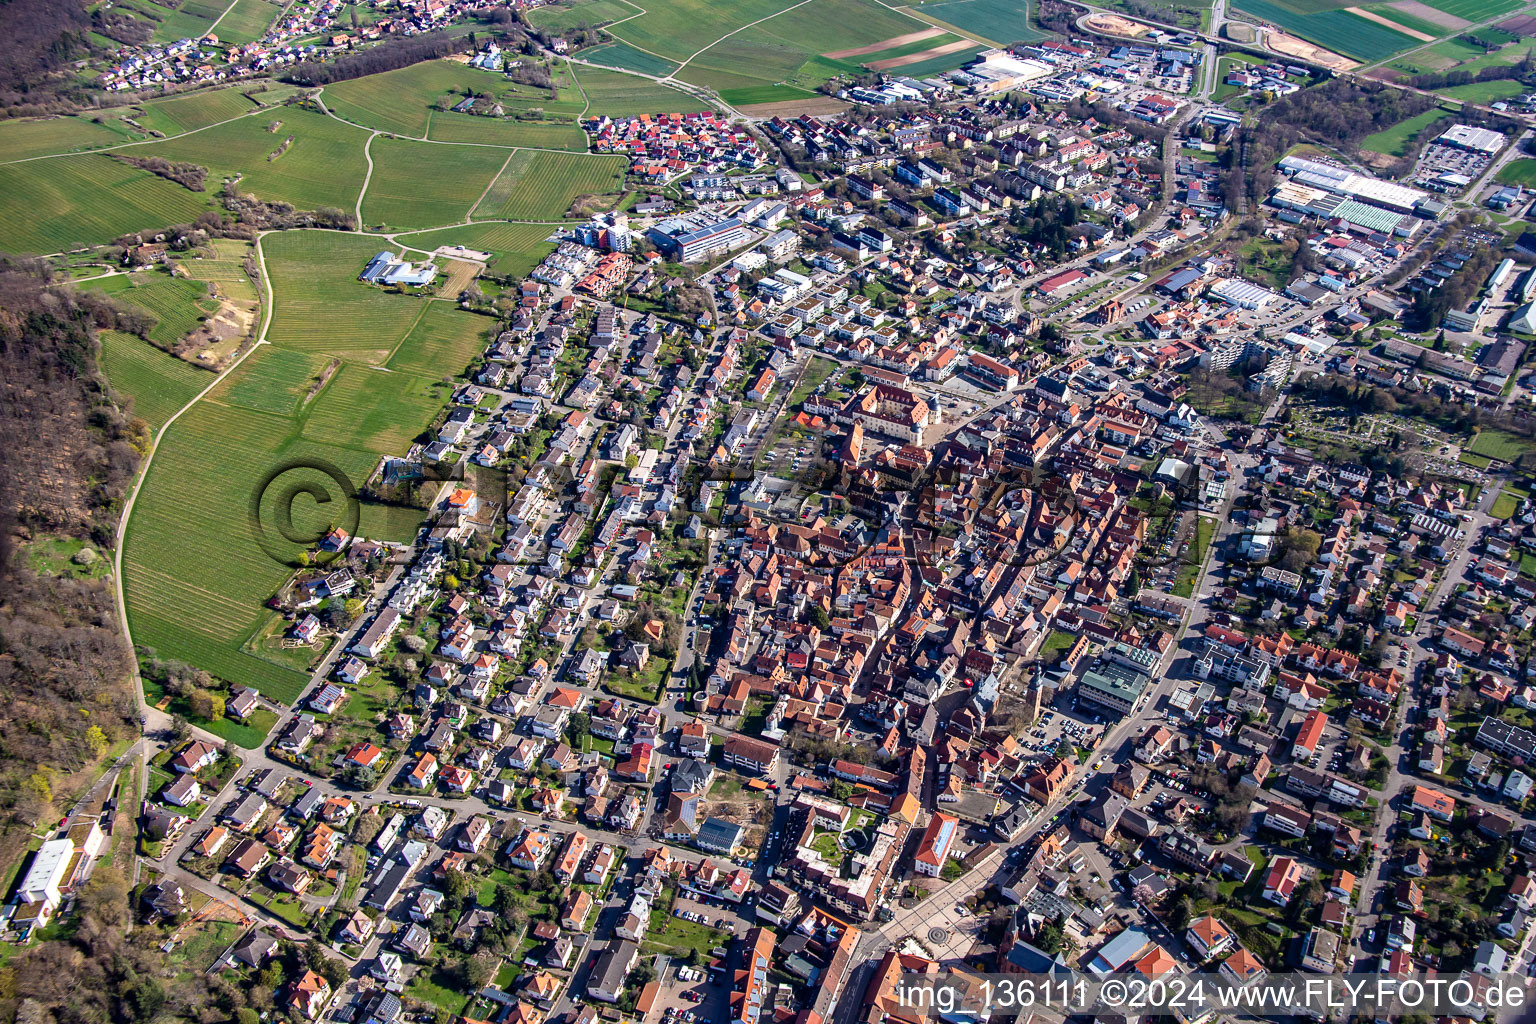 Luftbild von Pfalzgrafenstraße Saarstr in Bad Bergzabern im Bundesland Rheinland-Pfalz, Deutschland